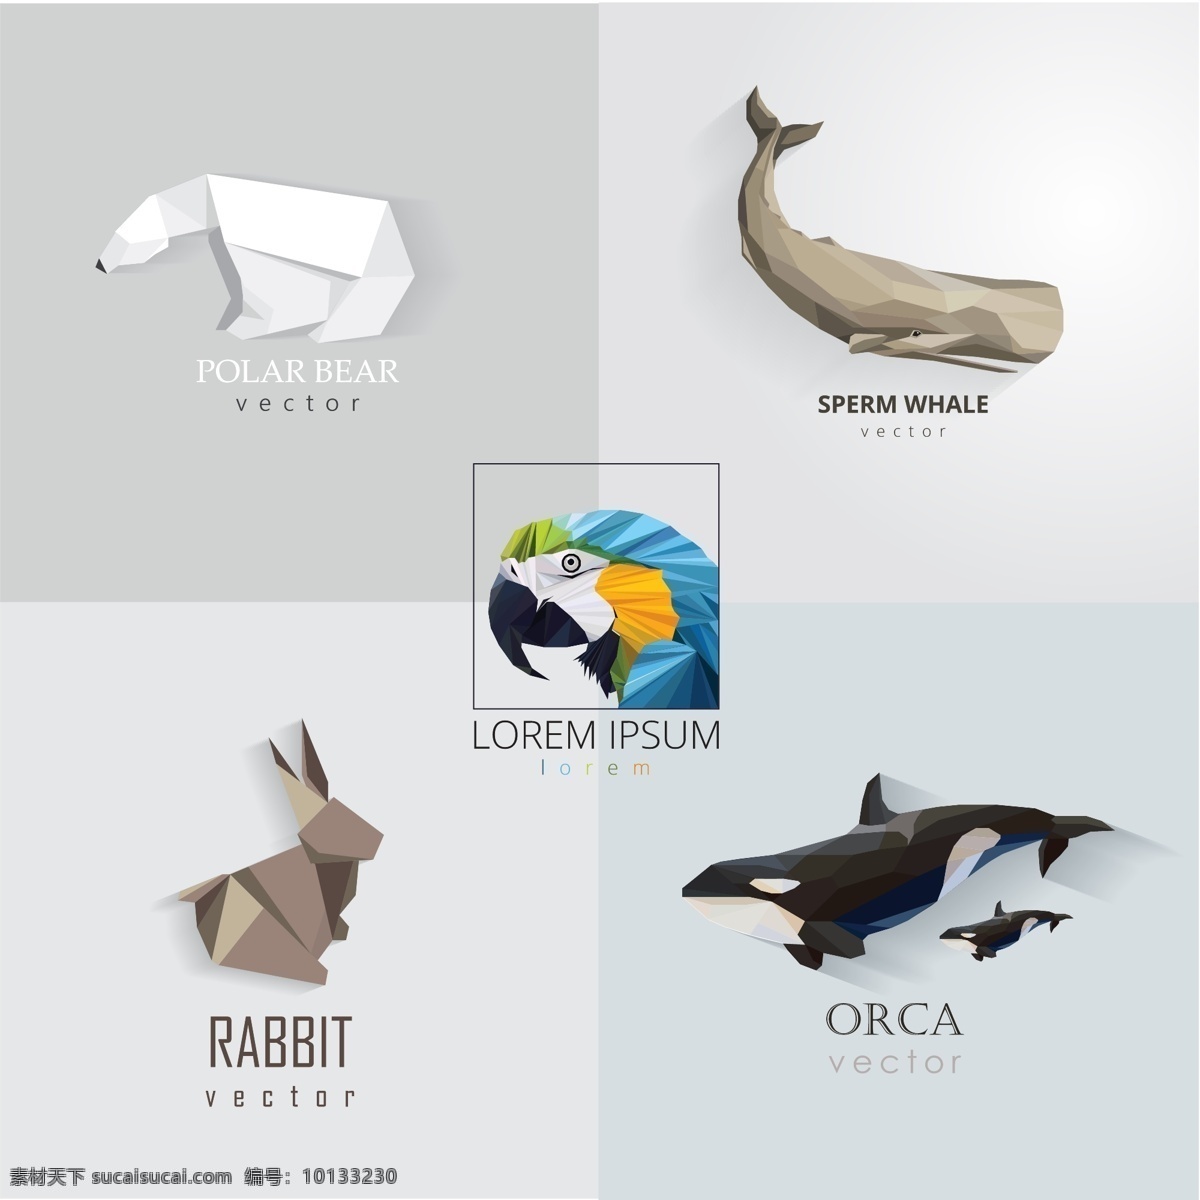 卡通动物标志 创意动物标志 动物标志 动物图标 动物形象 卡通动物 剪纸动物 动物logo 动物保护 鹦鹉 虎鲸 抹香鲸 兔子 北极熊 标志 logo设计